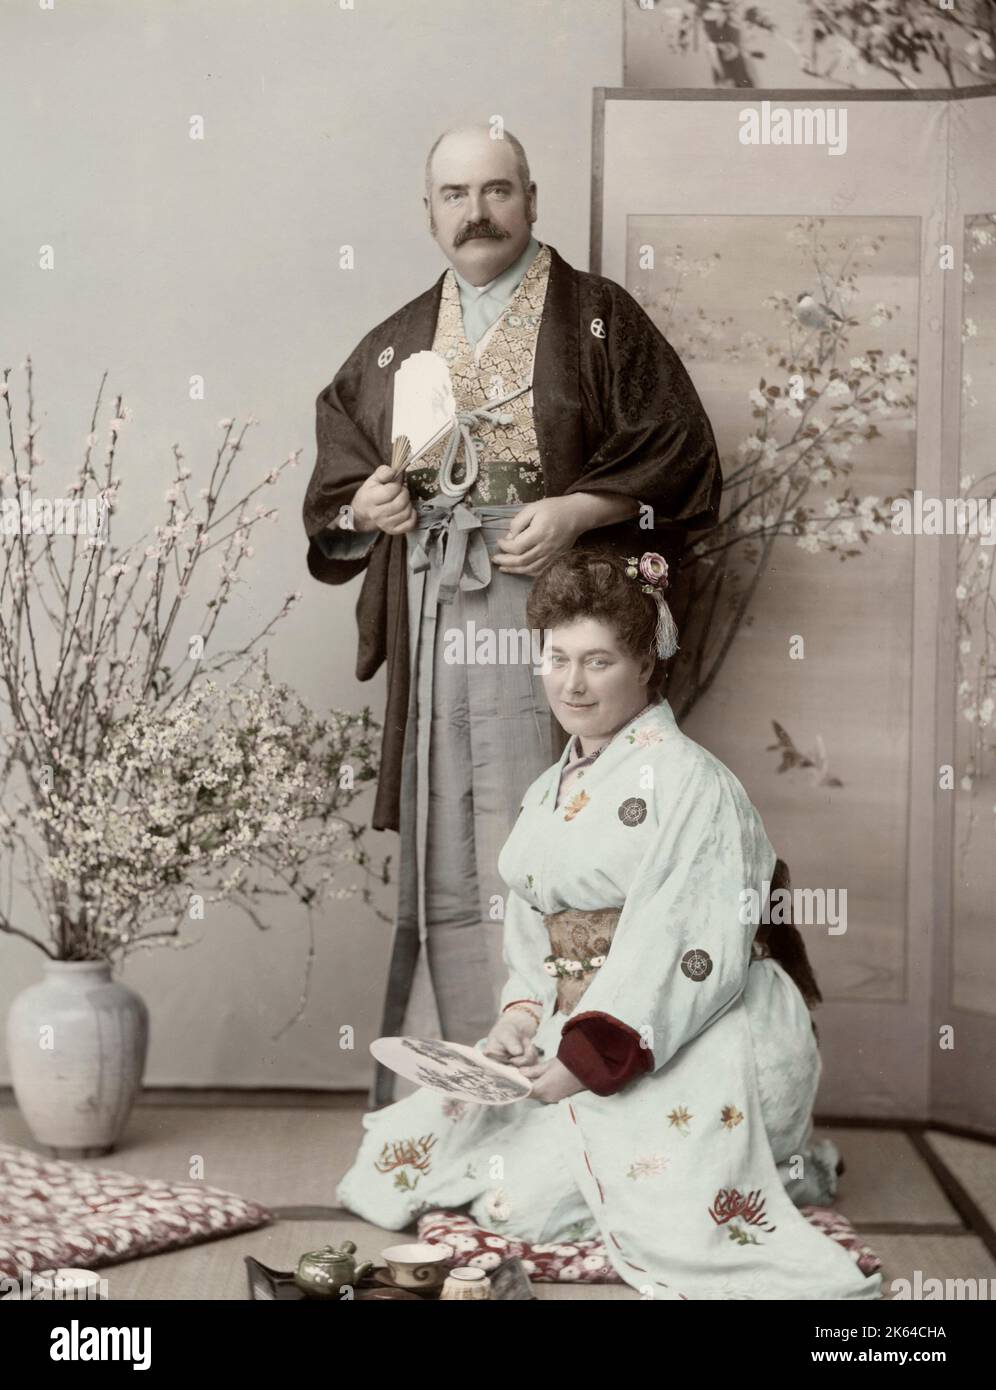 Vintage 19th century Photograph - Meiji era Japan: Porträt eines westlichen Paares in japanischen Kleidern in einem stduio Setting, wahrscheinlich Touristen. Stockfoto